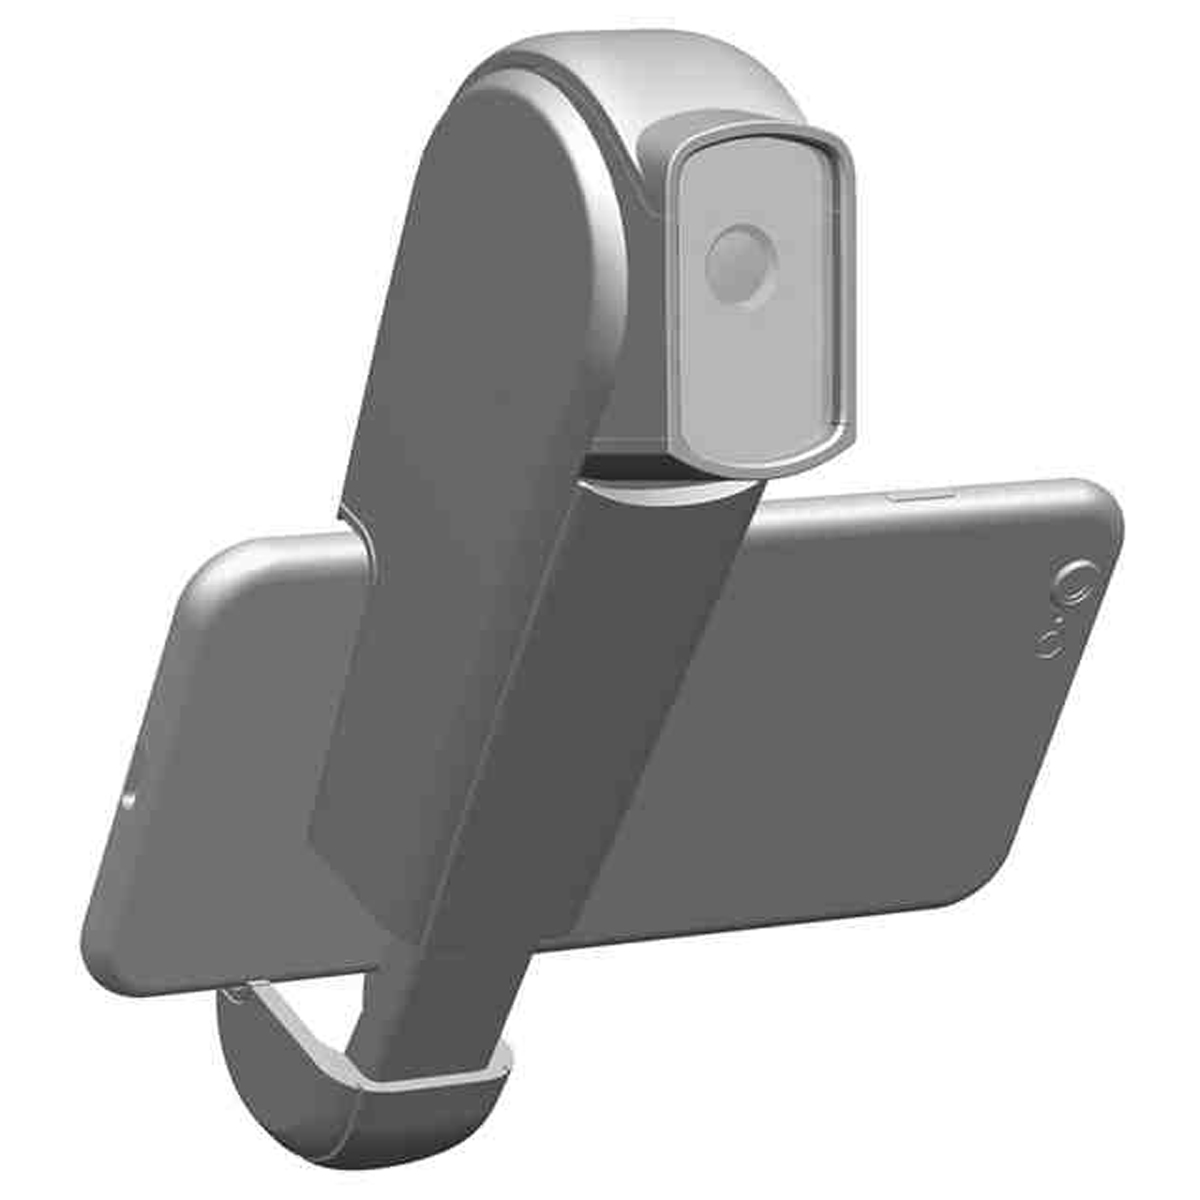 Canon Patent Camera Attachment Smartphones